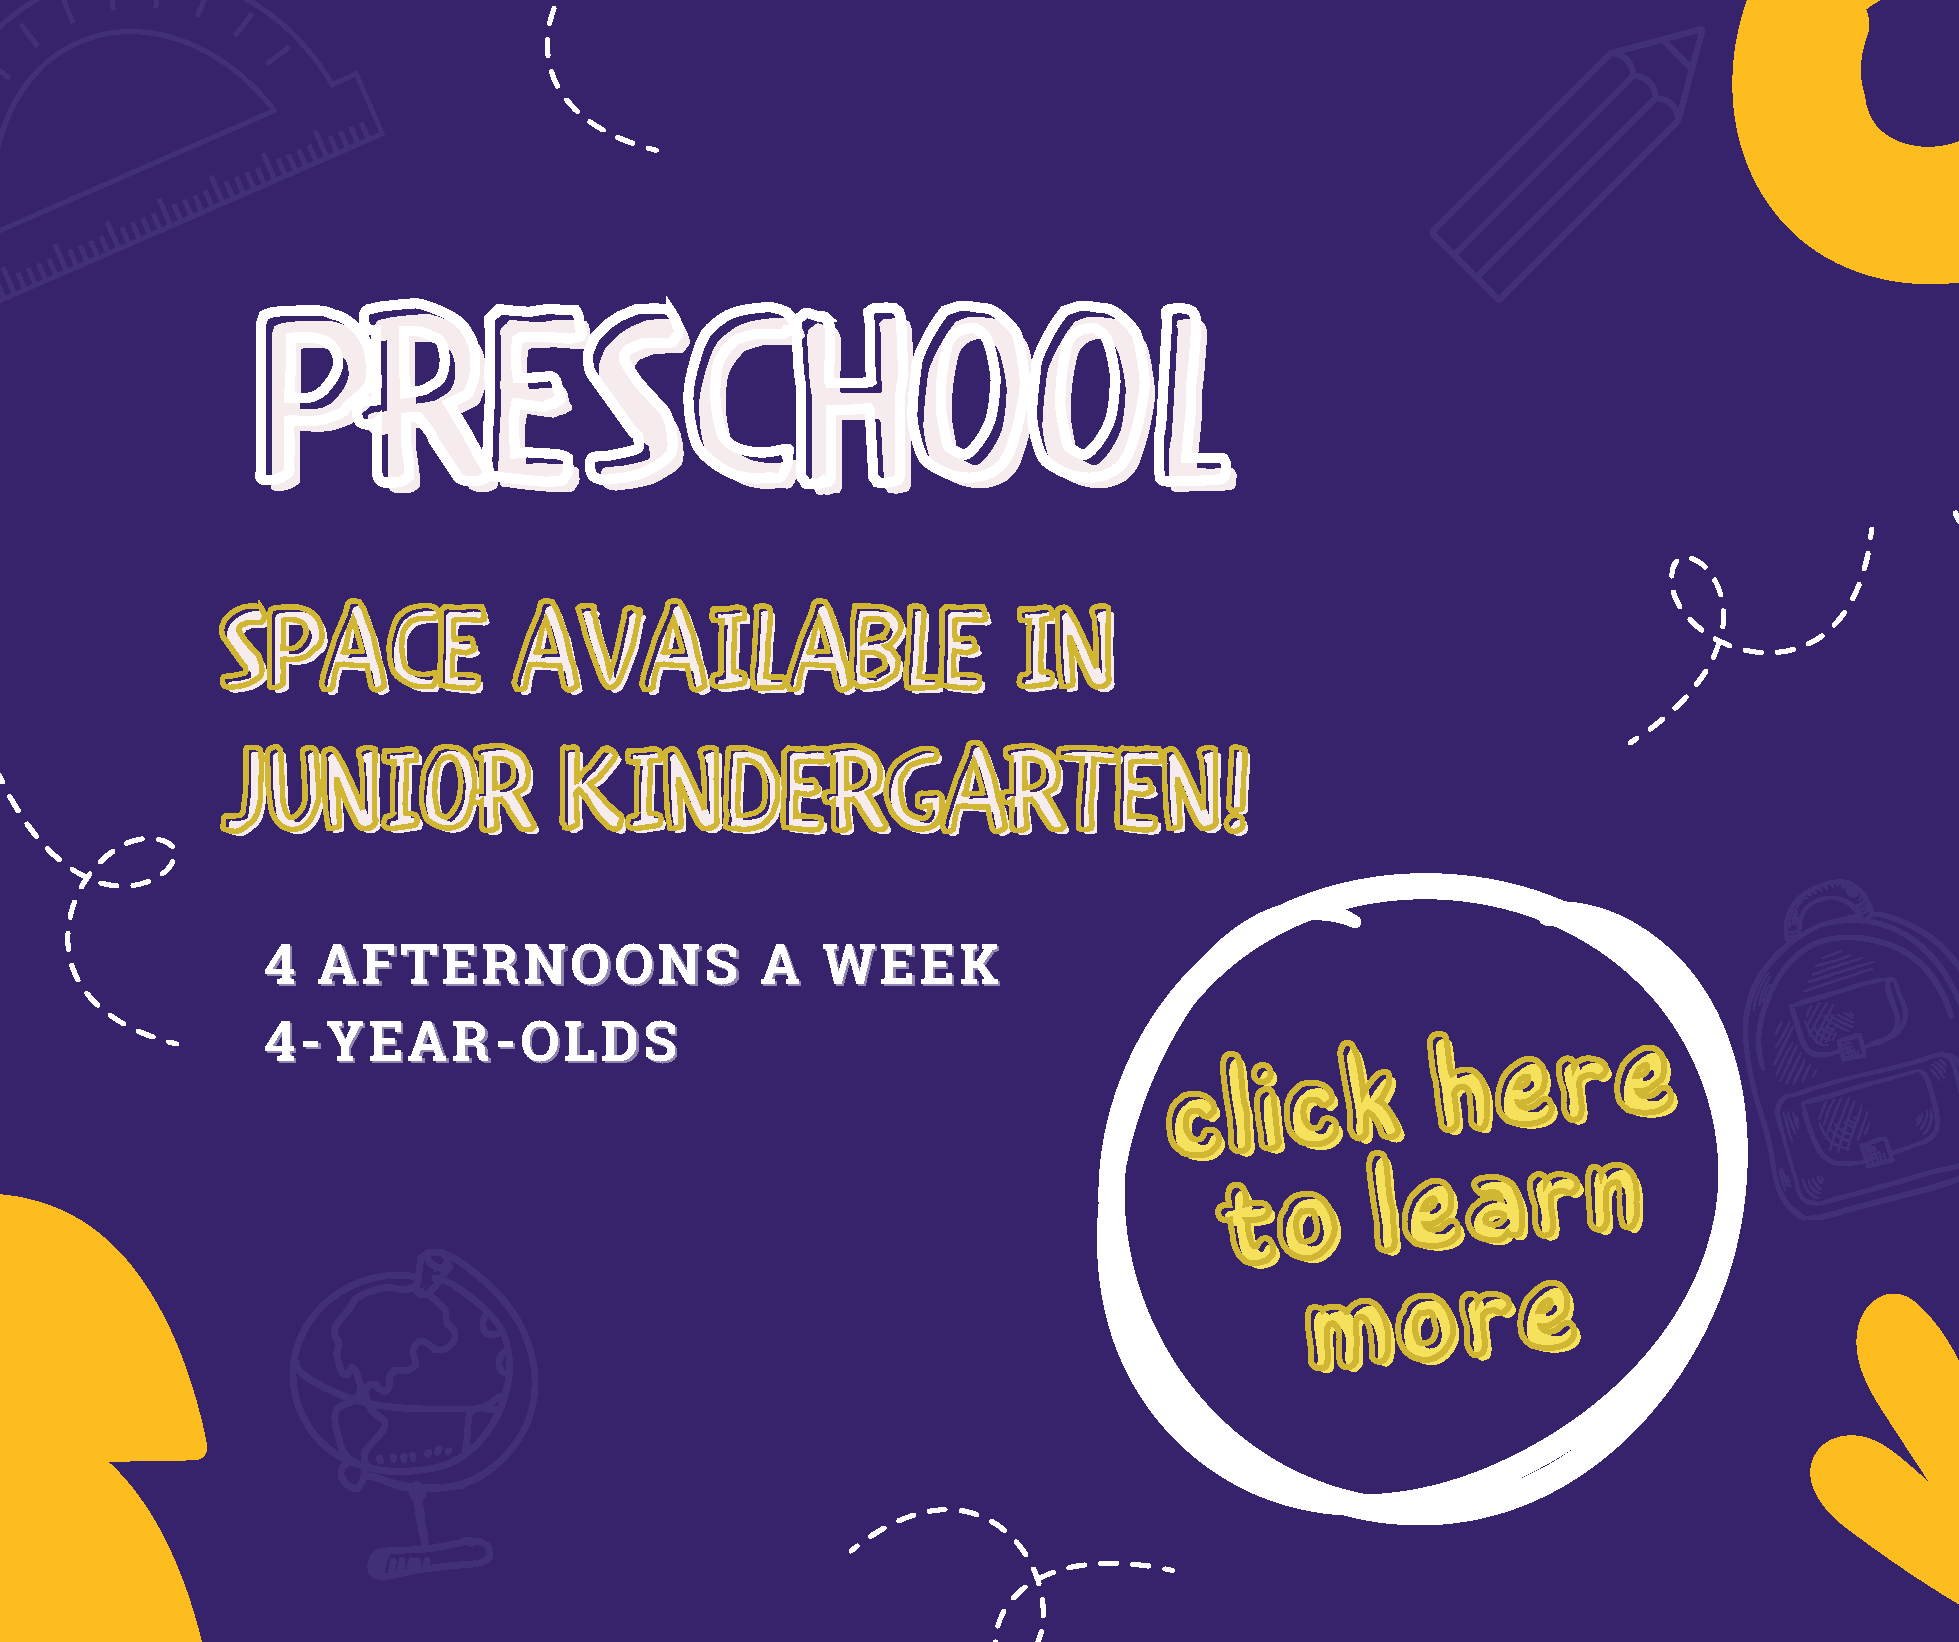 Space Available in Junior Kindergarten